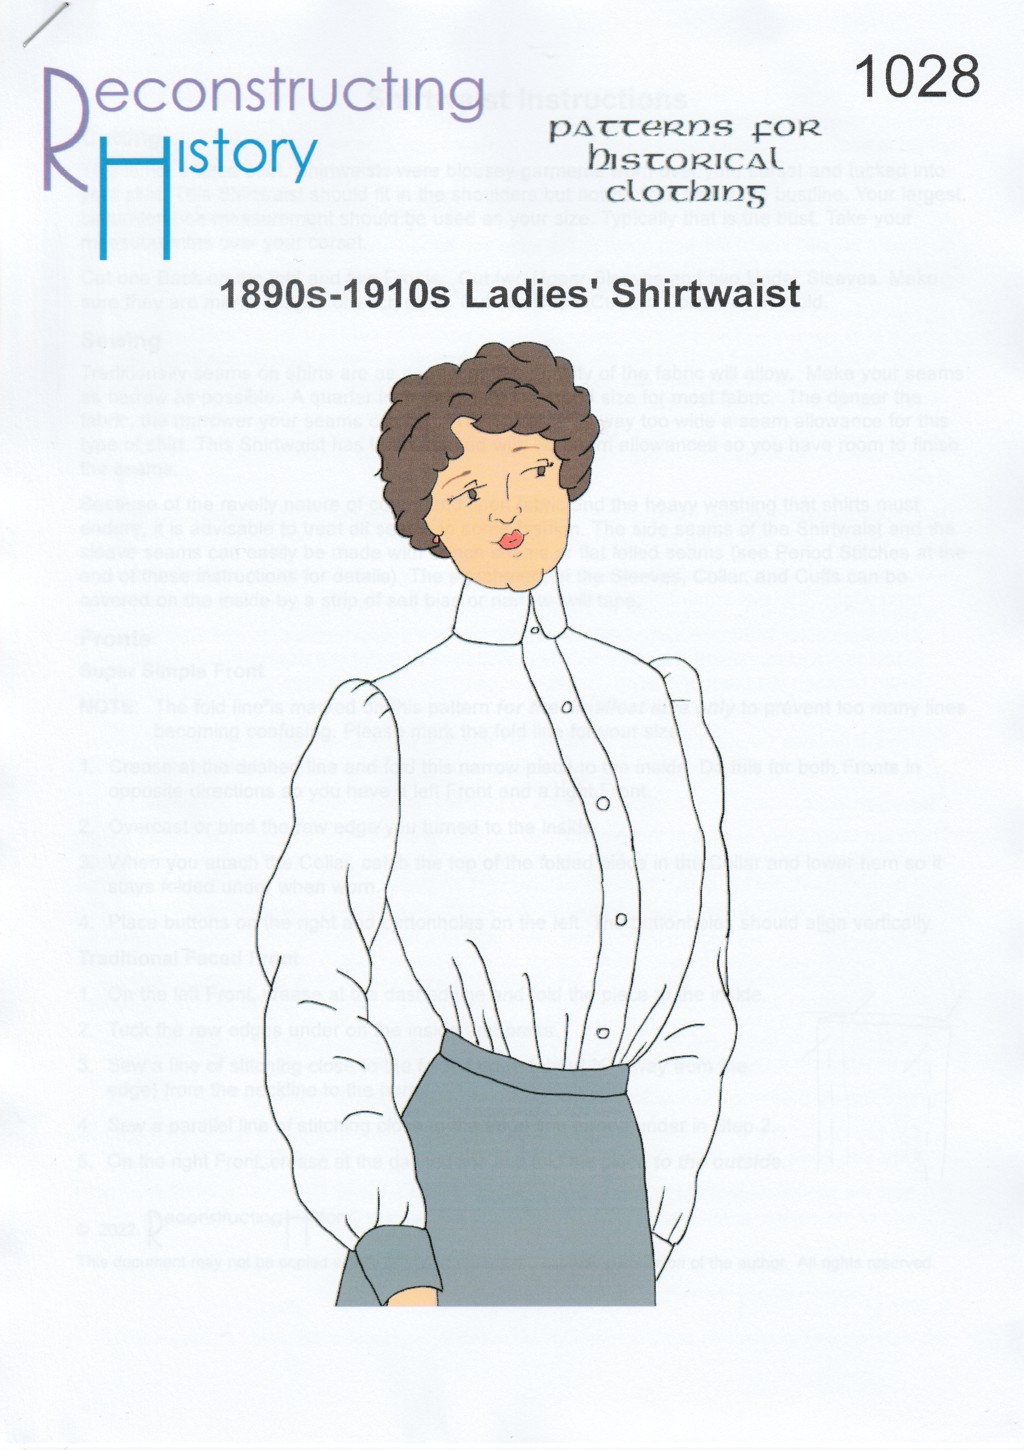 RH 1028 Ladies' 1910s Shirtwaist